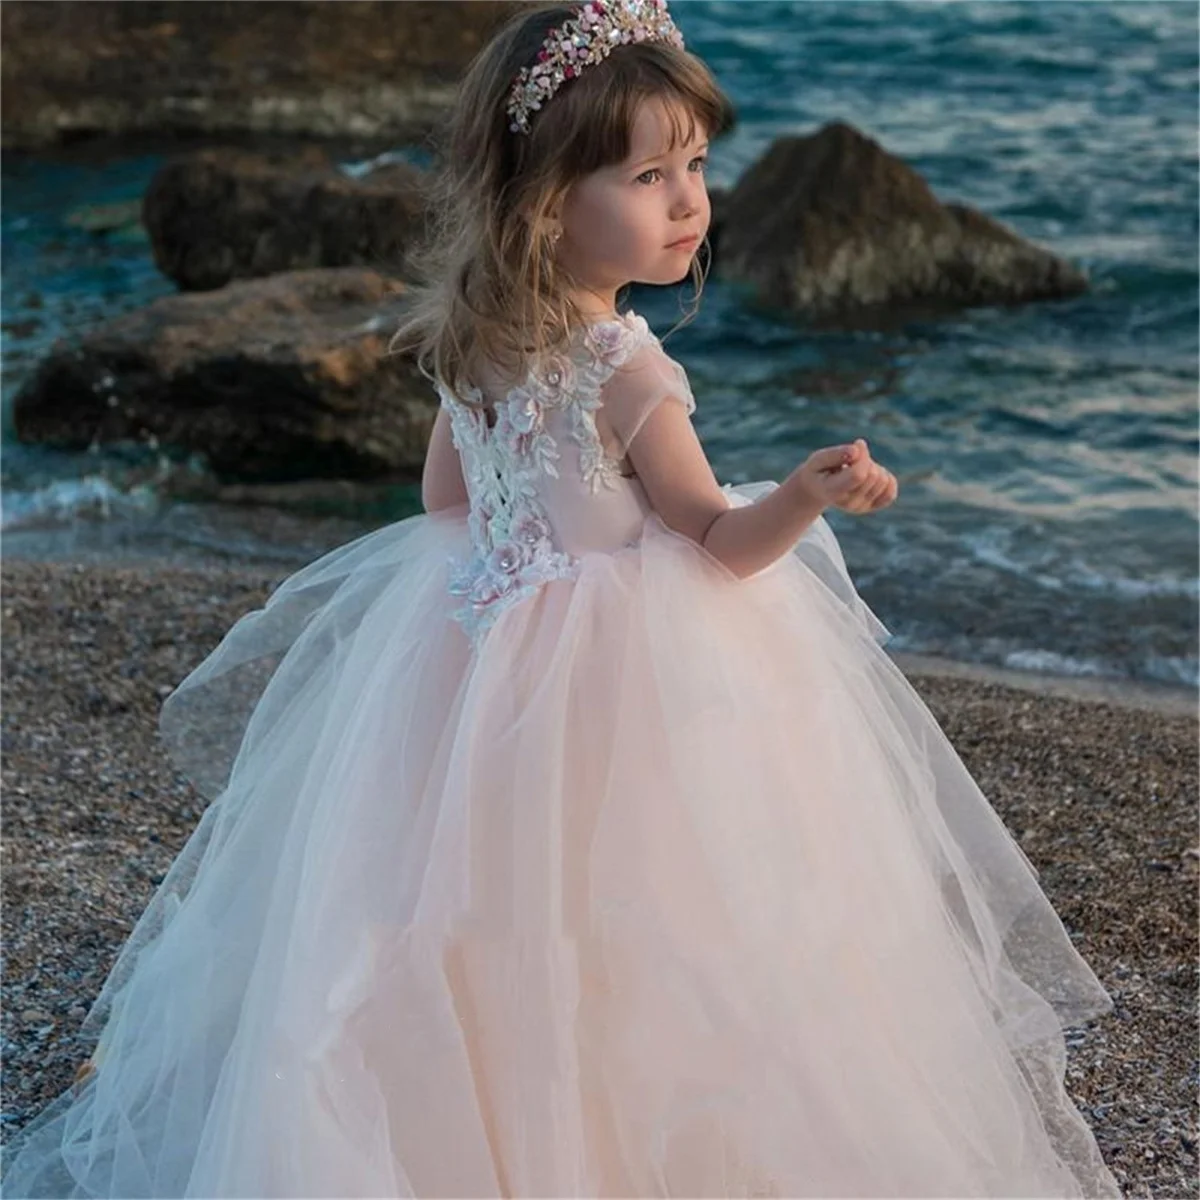 

Цветочное платье для девочки, розовое Пышное Тюлевое кружевное свадебное платье с аппликацией, милый цветок, детское платье для первого эухаристического дня рождения, подарок для девочки